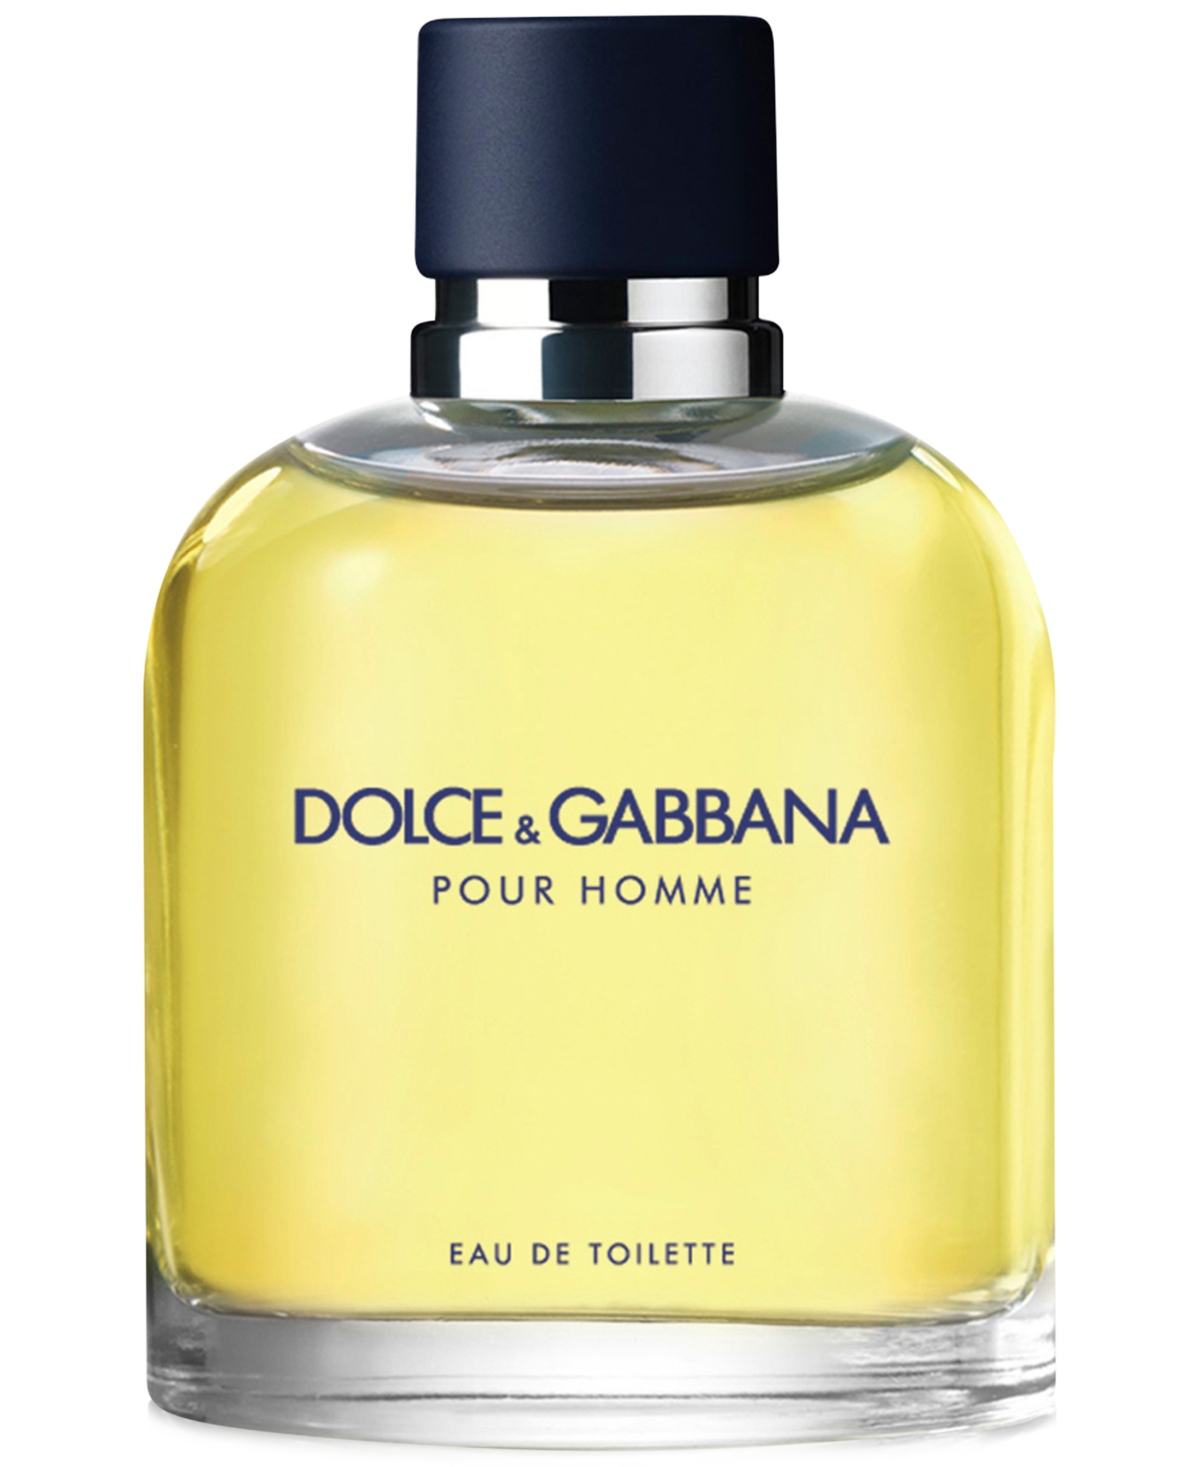 Dolce&Gabbana Men's Pour Homme Eau de Toilette Spray, 2.5 oz.